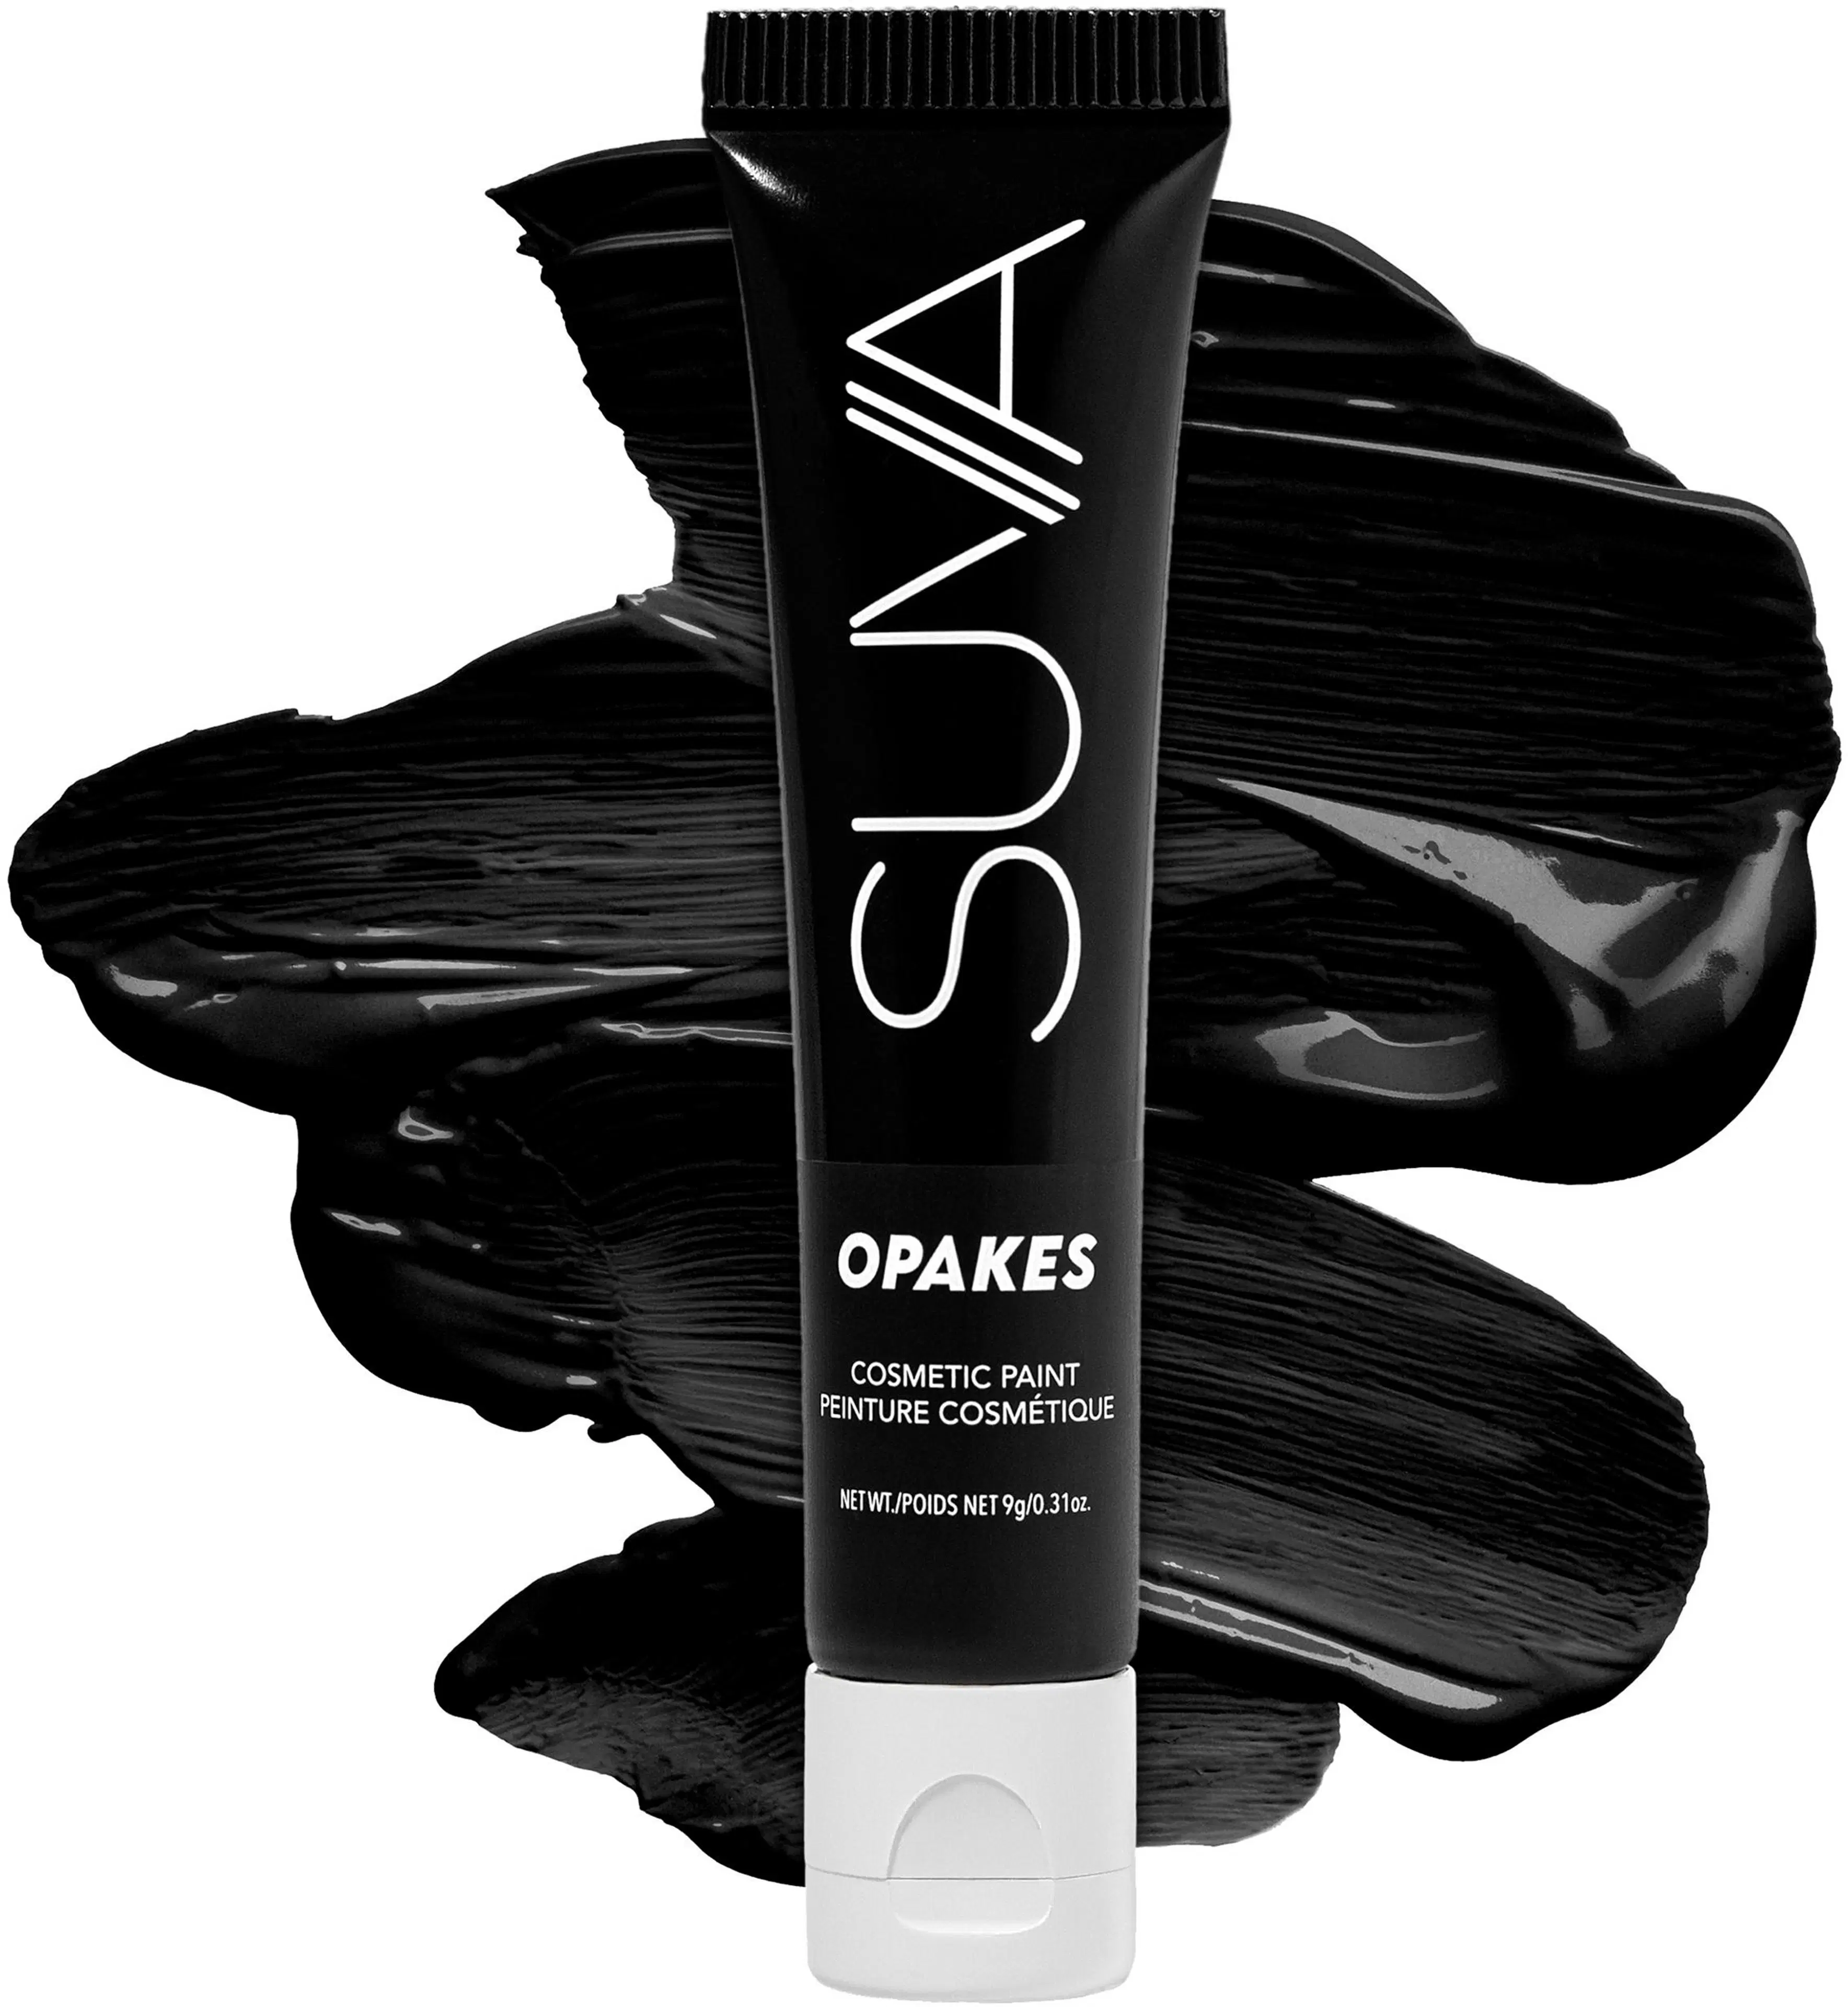 SUVA Beauty Opakes Cosmetic Paint Bamboozled Black väri 9g